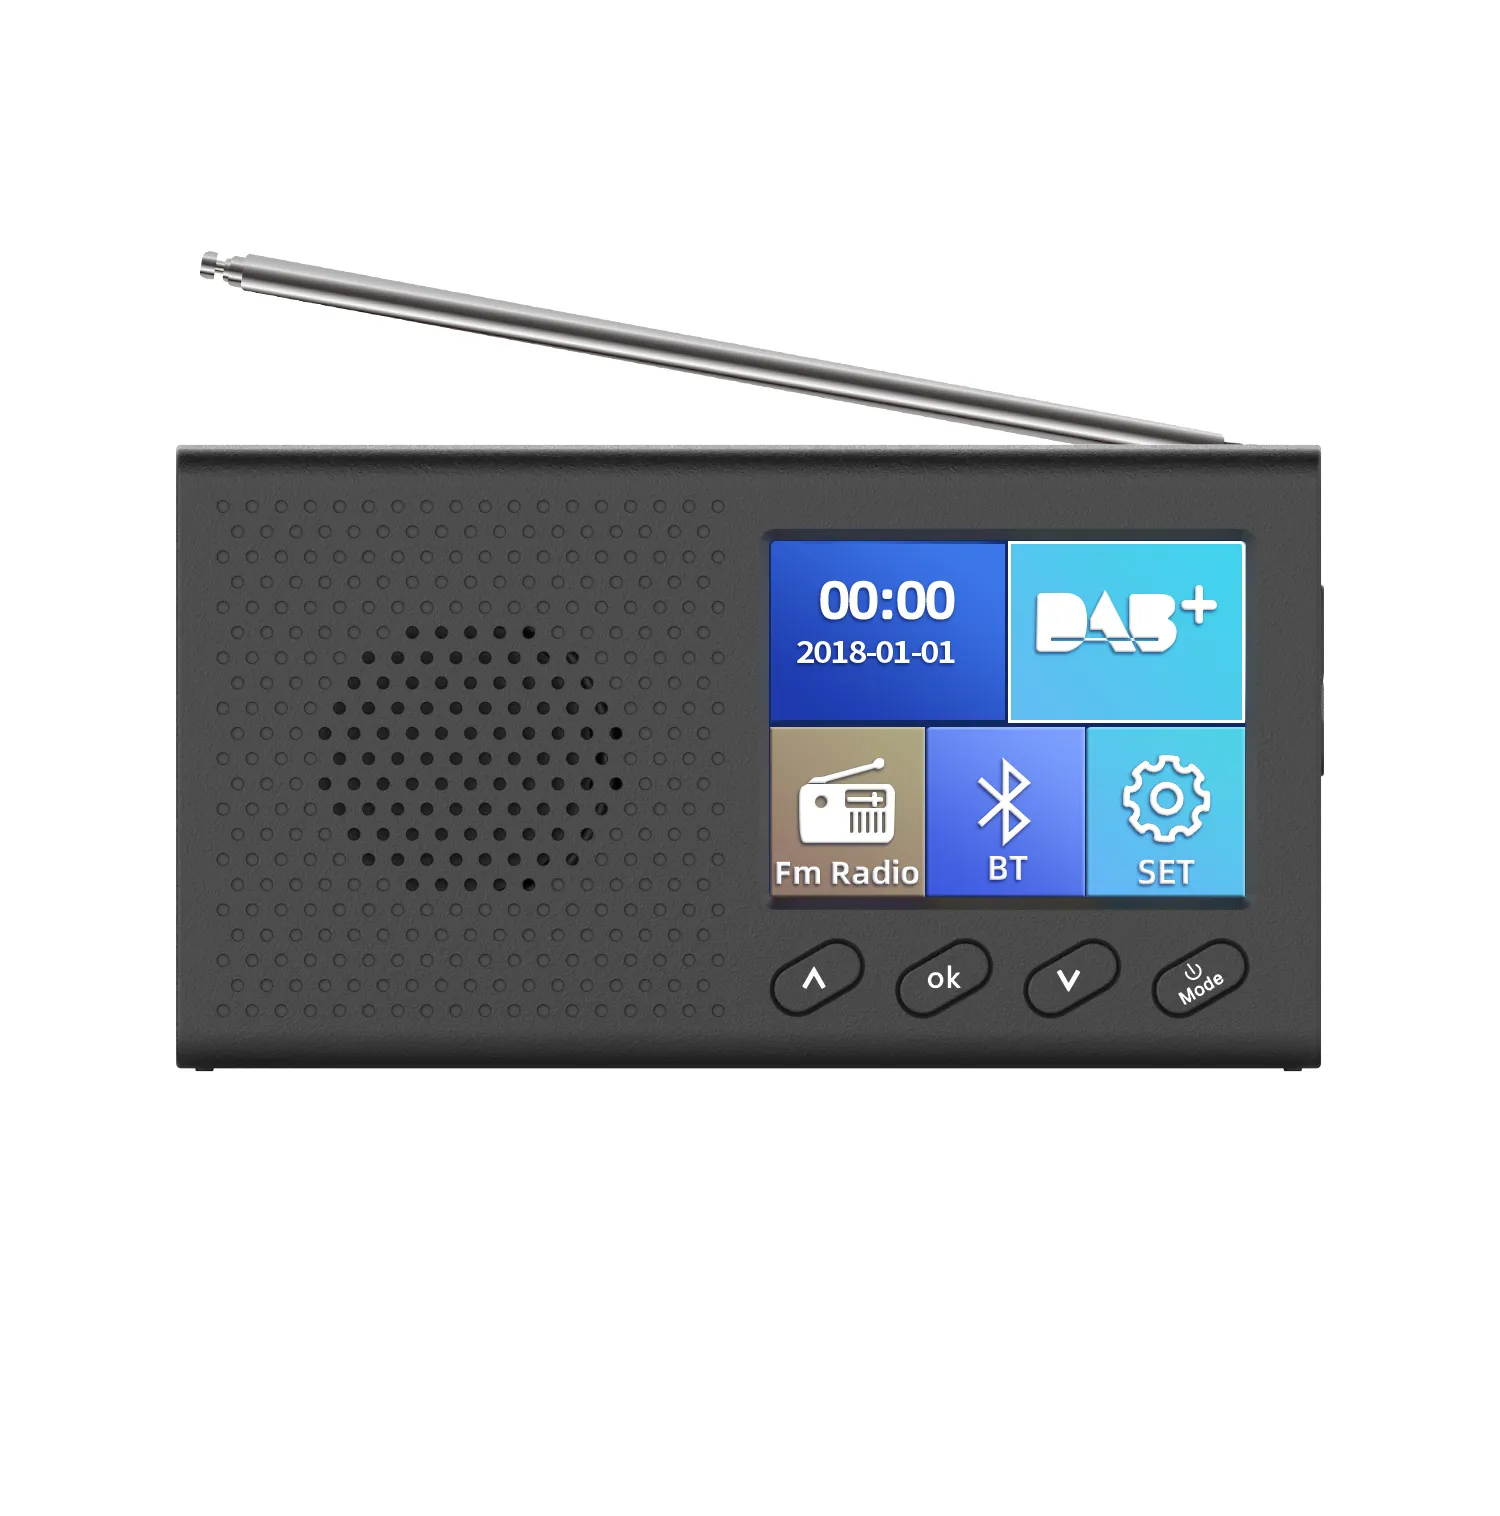 Taşınabilir cep LCD renkli ekran DAB/DAB + radyo ile kablosuz BT hoparlör